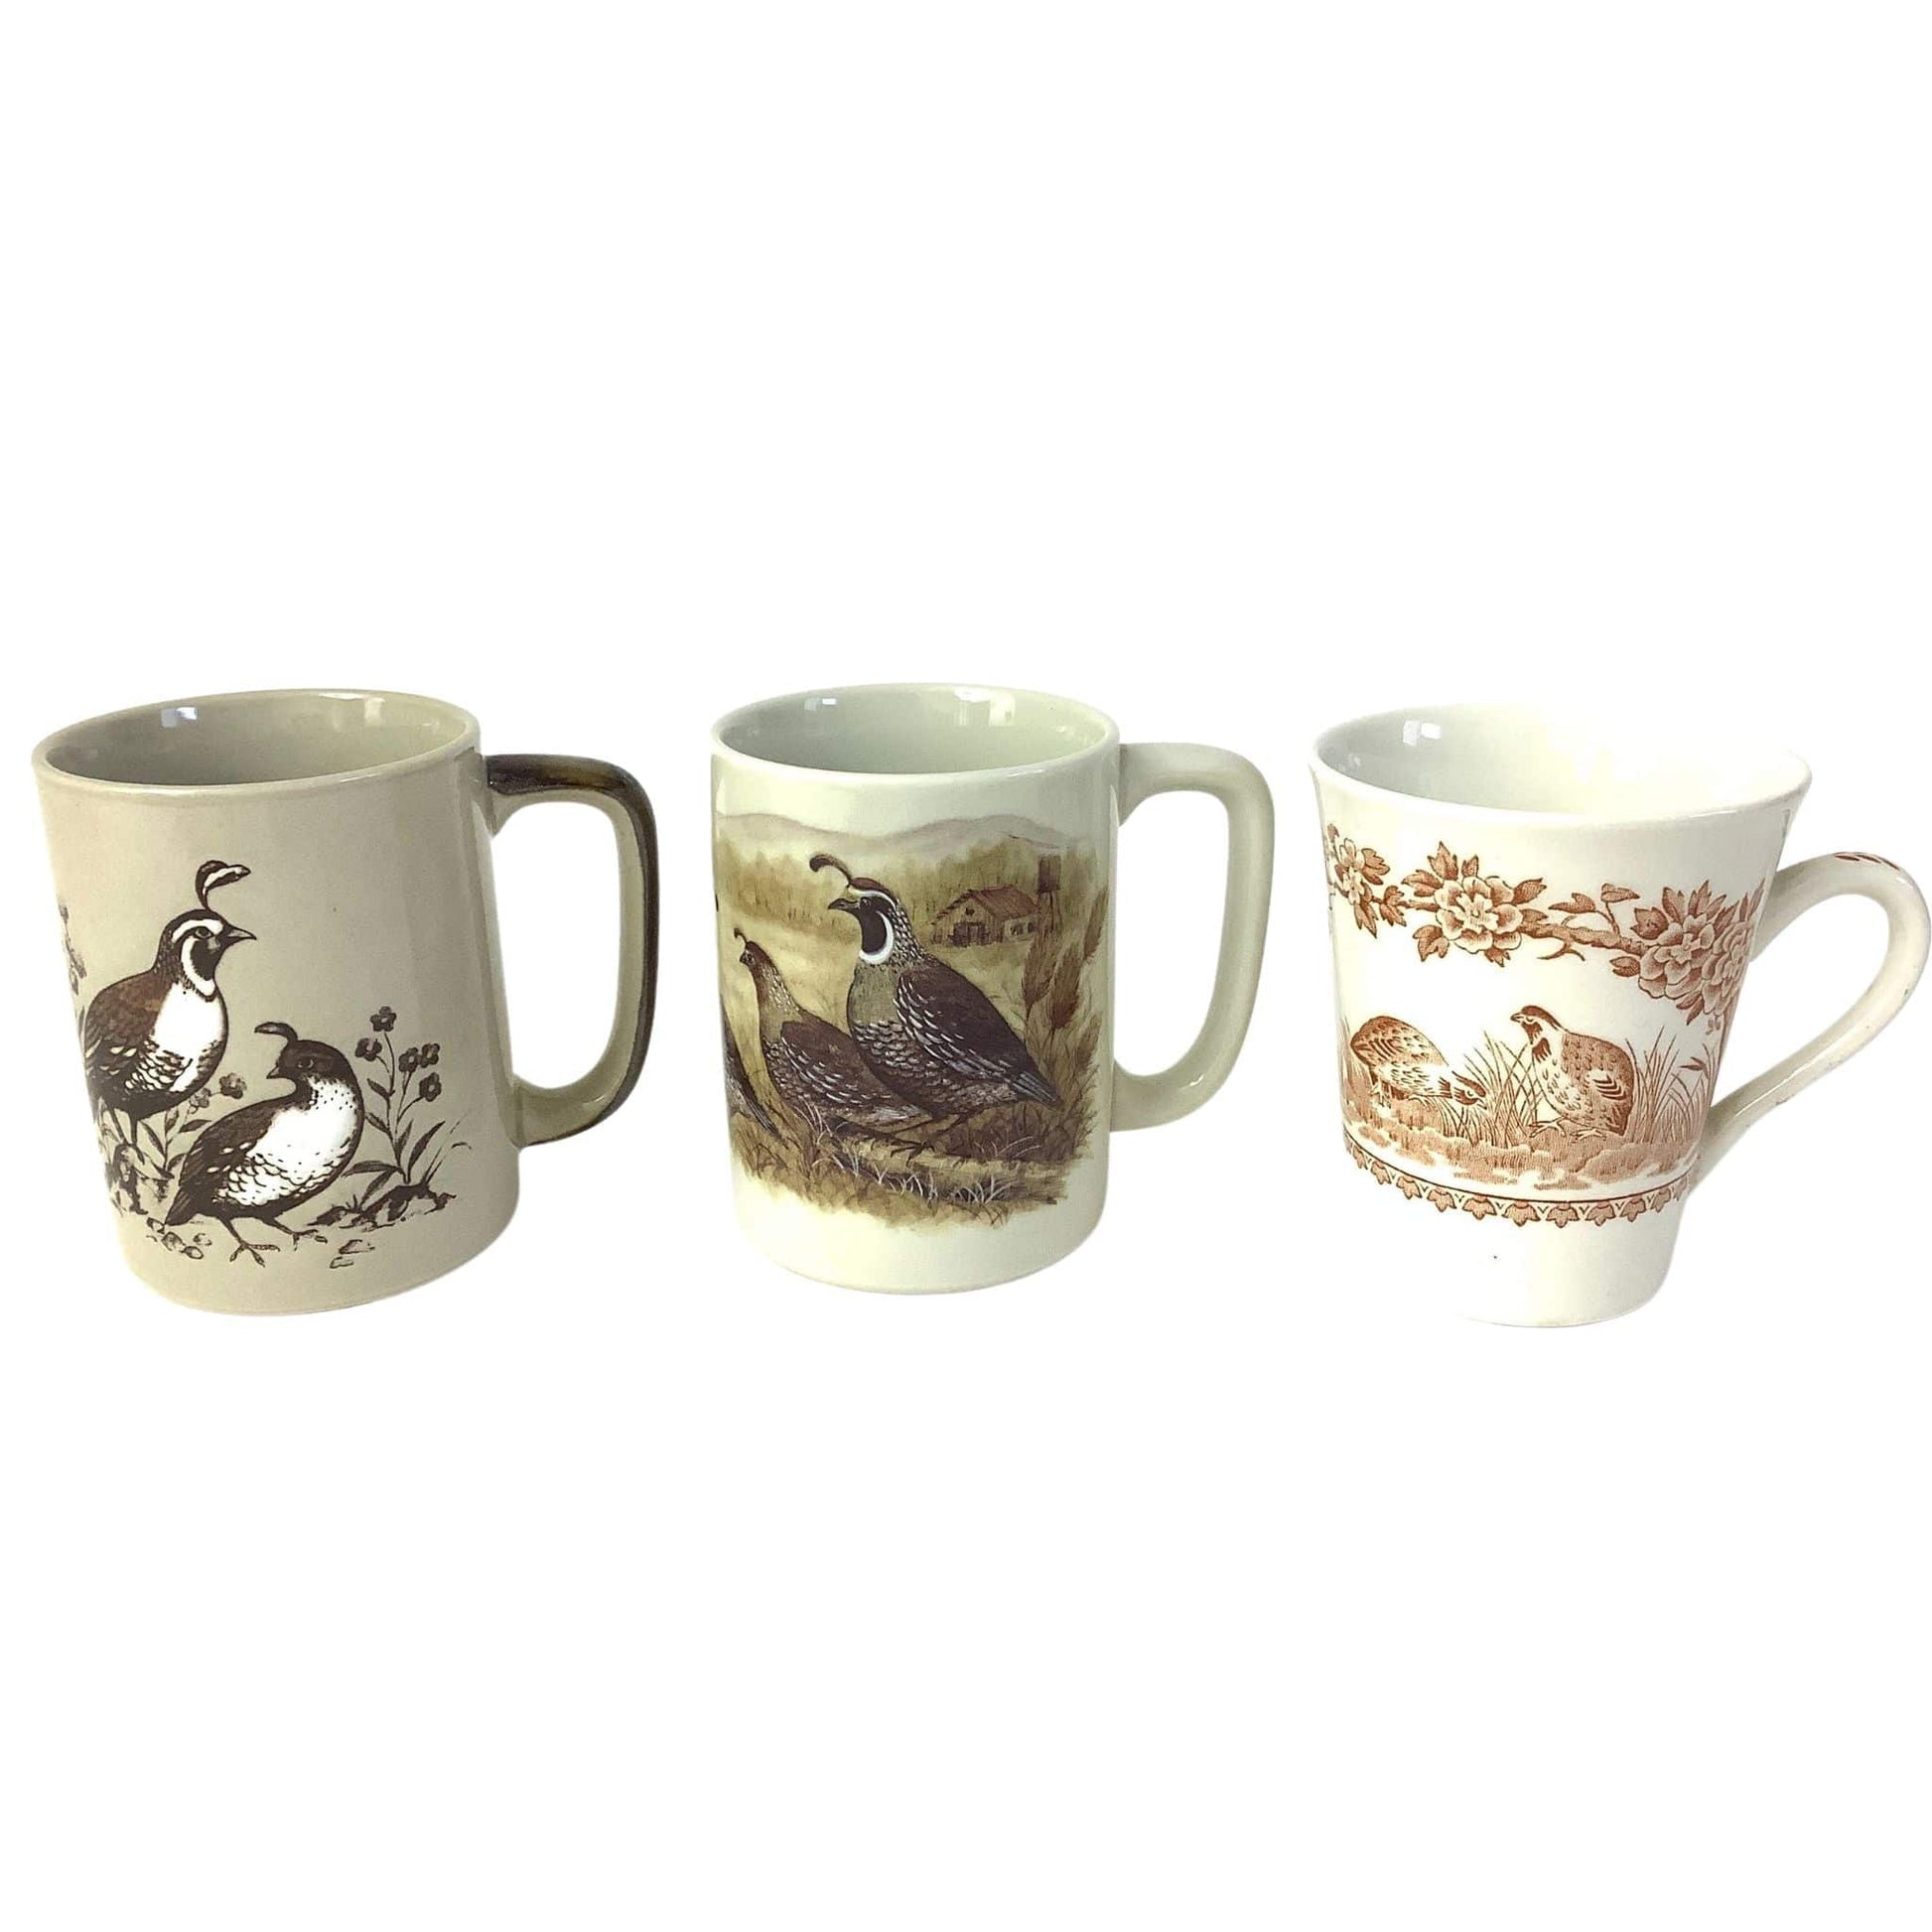 Vintage MCM Coffee Mugs Multi / Ceramic / Vintage 1950s